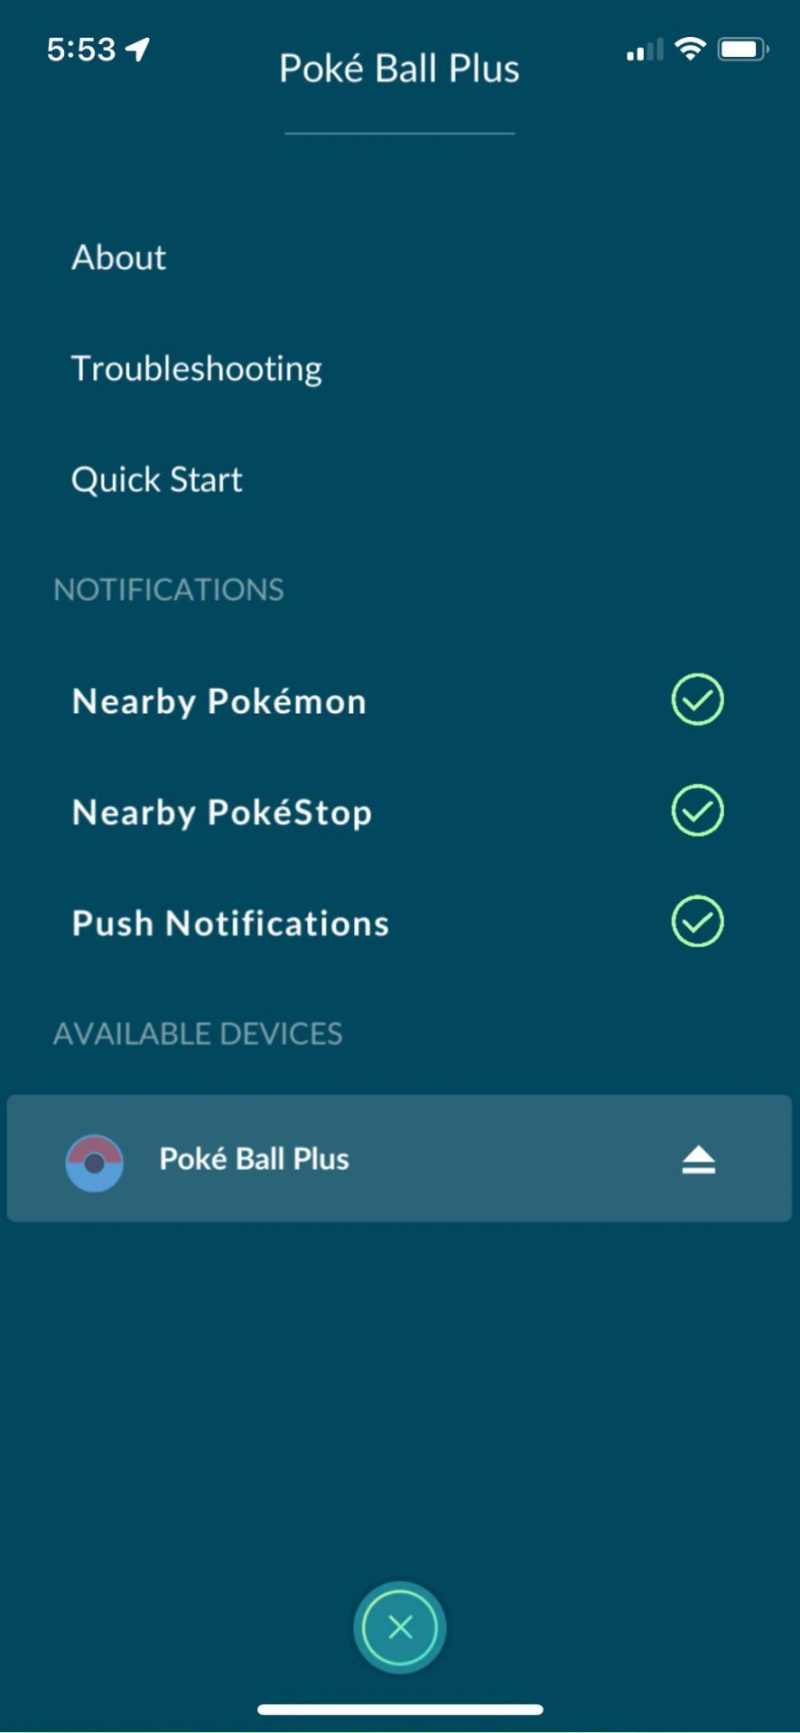   Povežite Poke Ball Plus s Pokémon Go in glejte meni za upravljanje obvestil